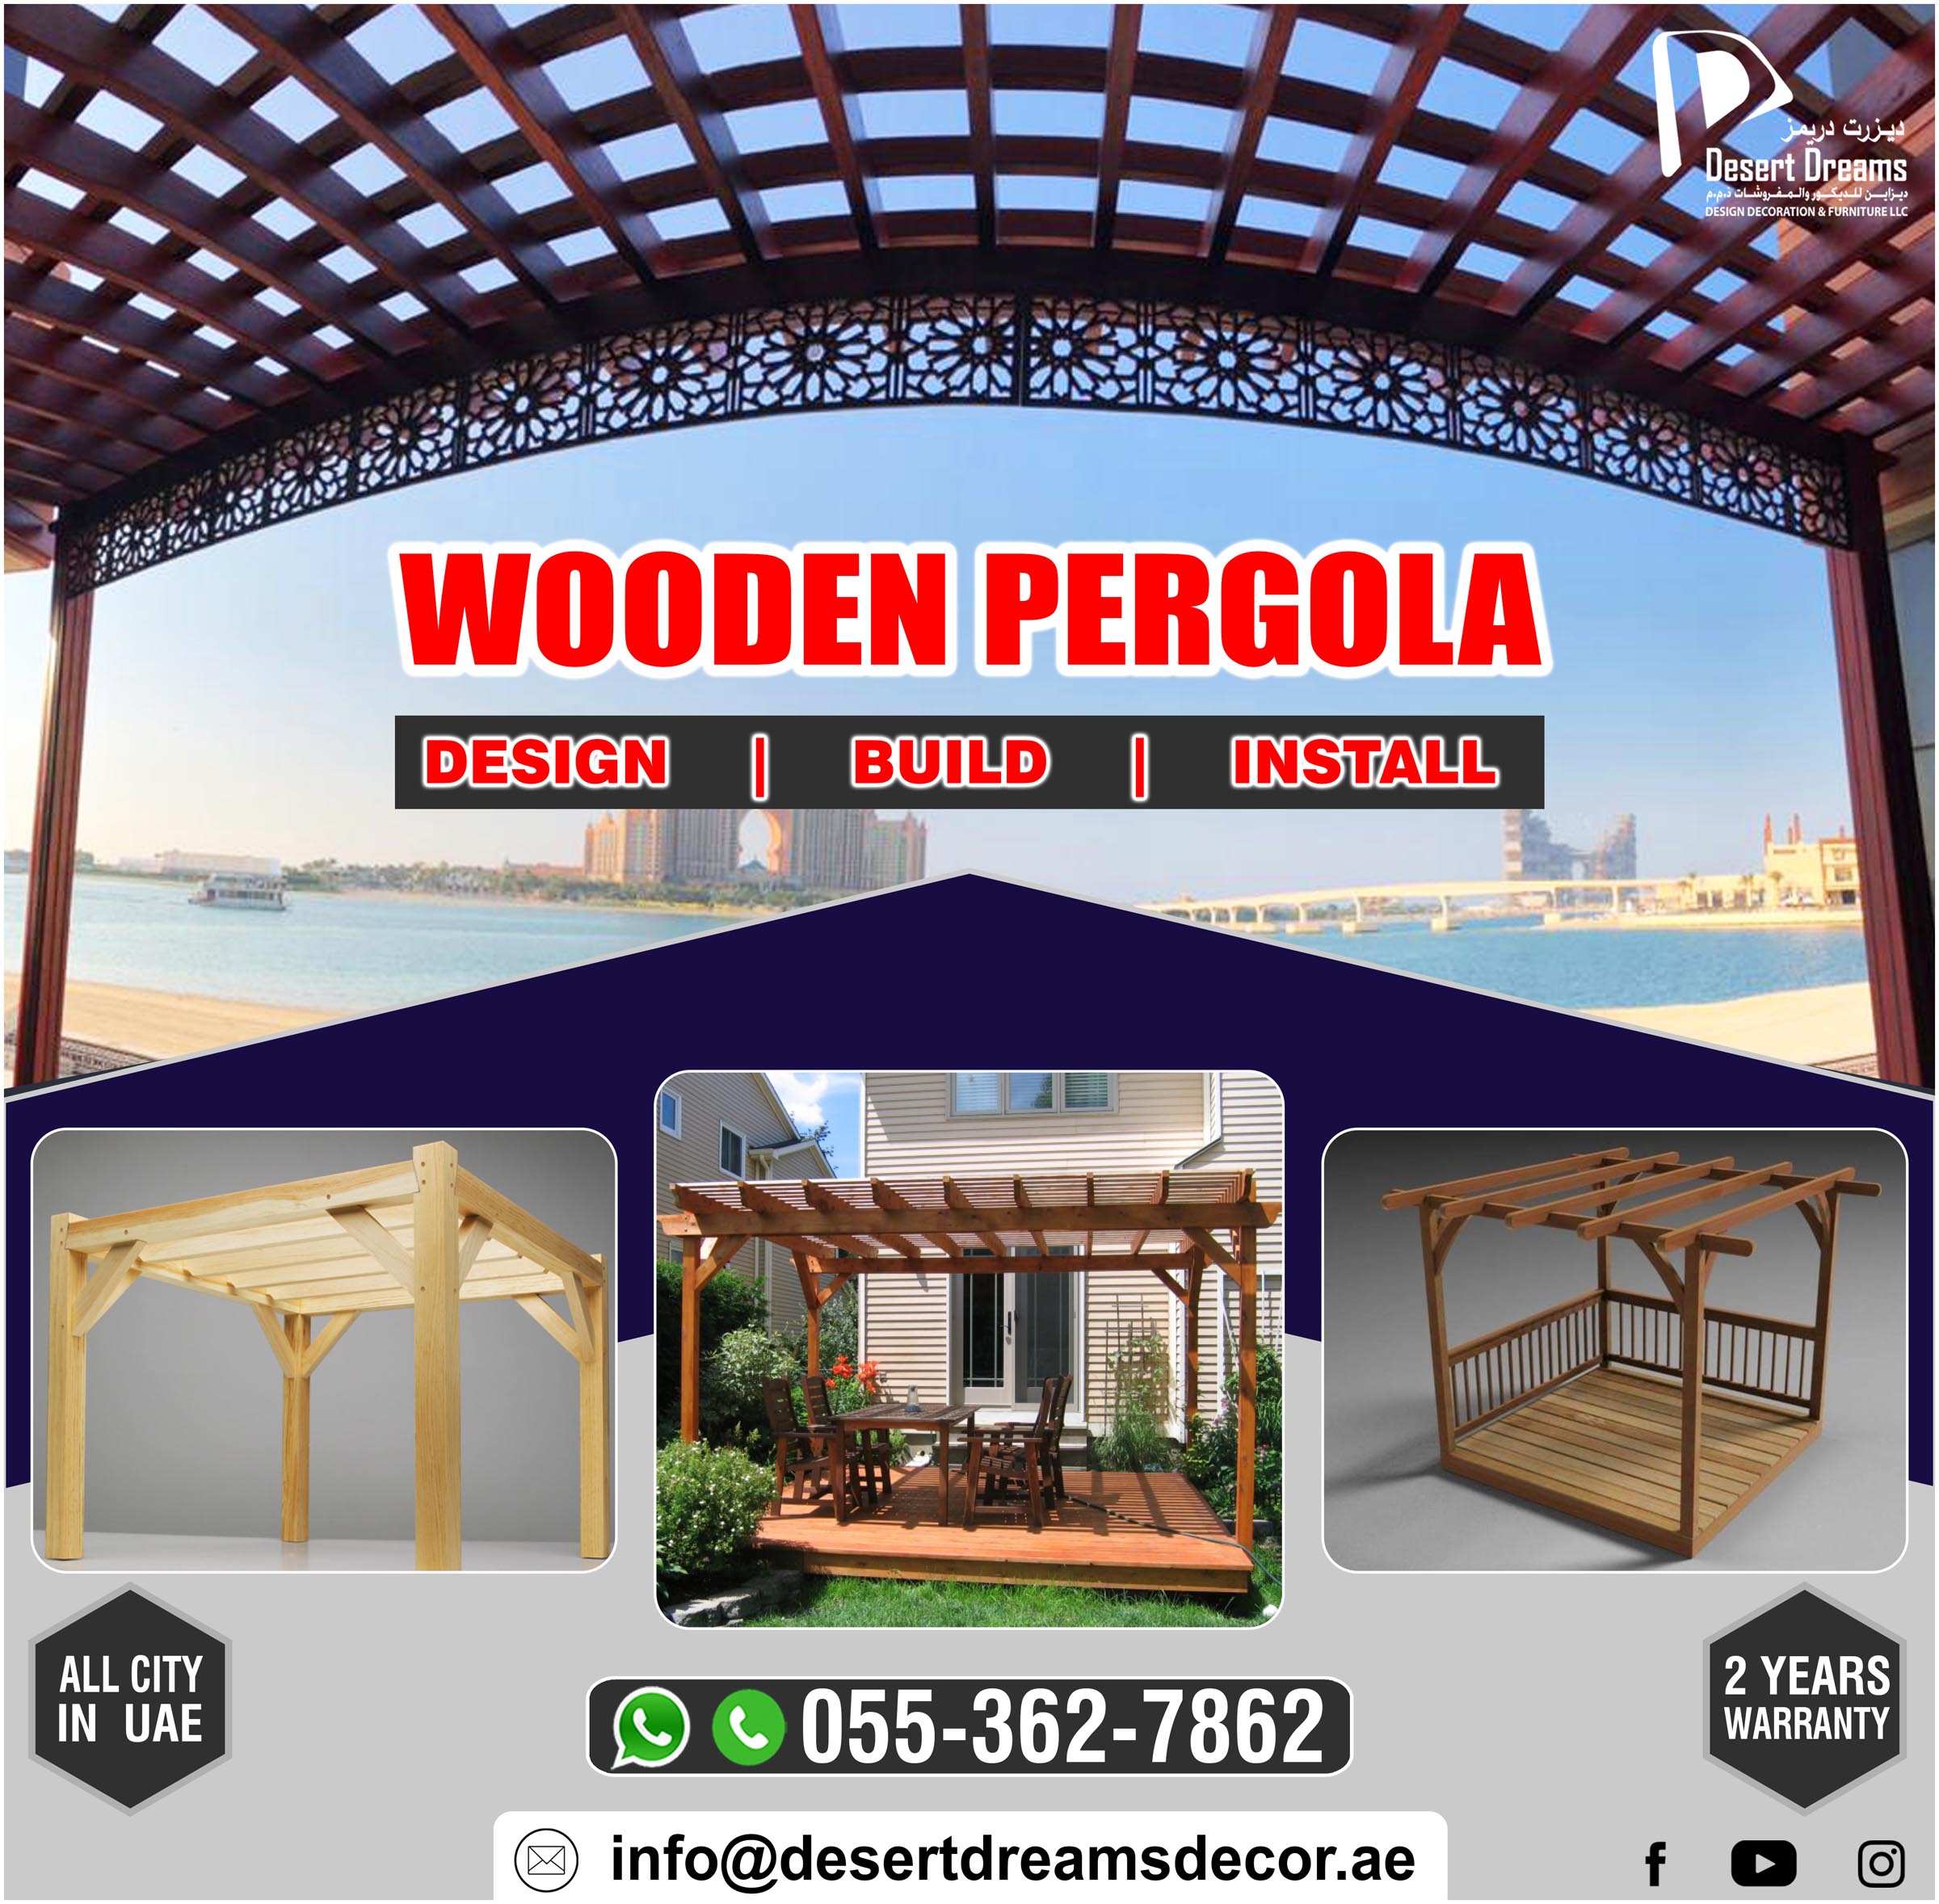 Design_Build and Install Wooden Pergolas in Uae.jpg